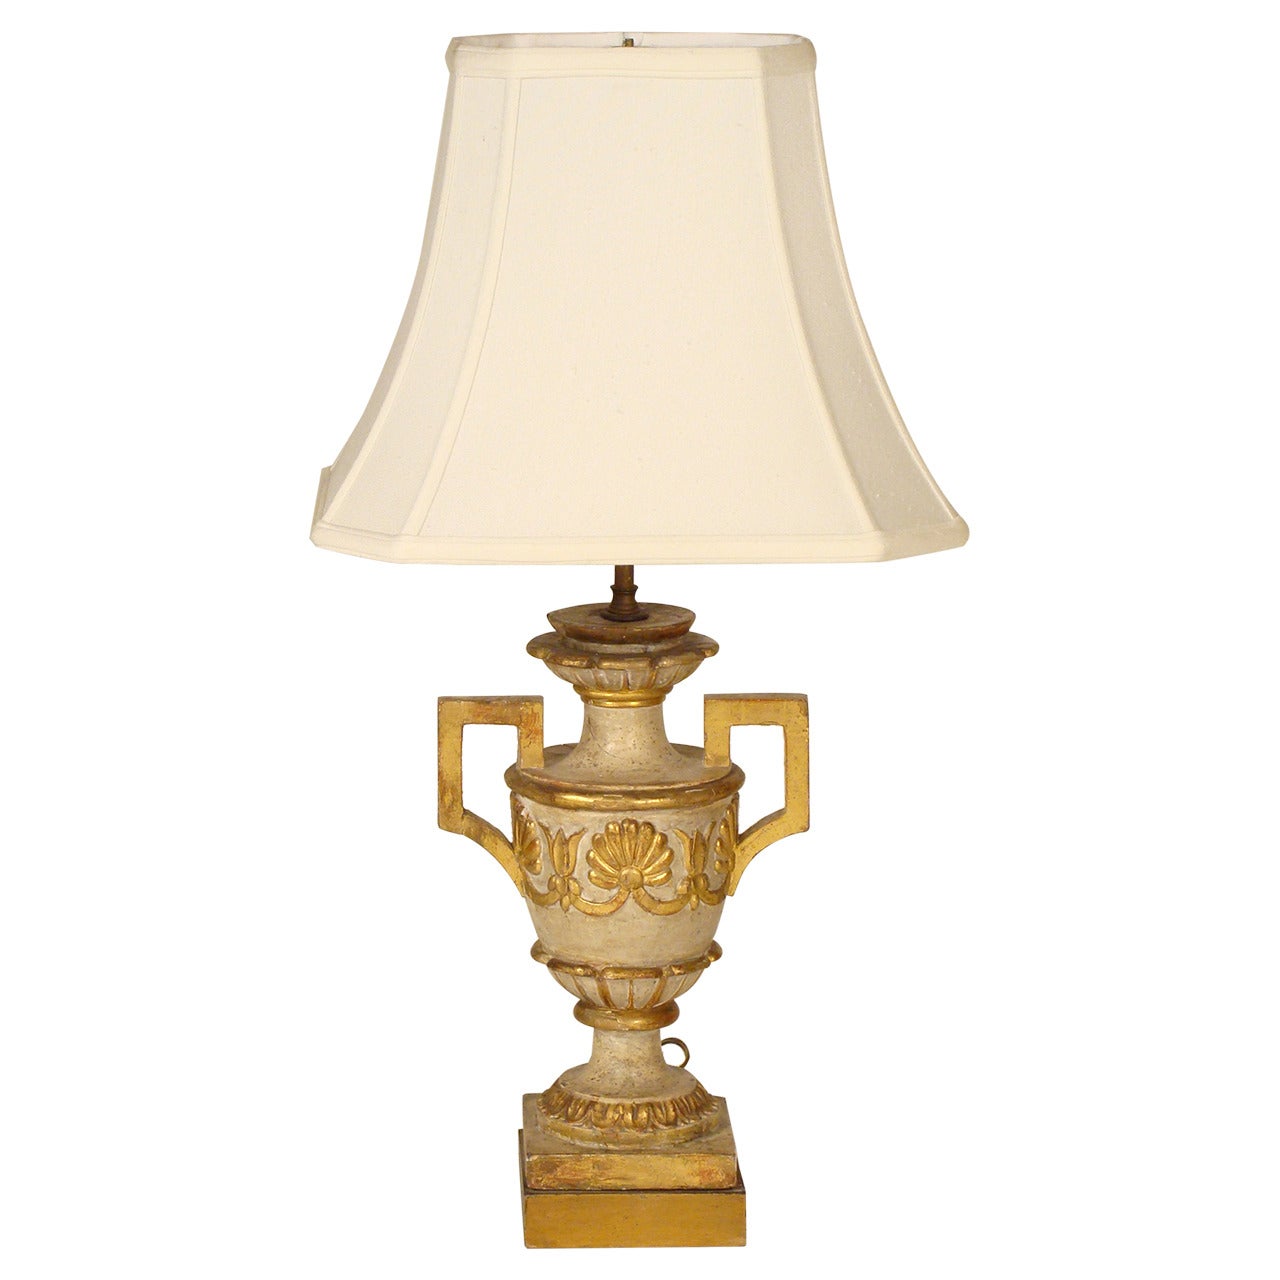 Neoclassical Lamp